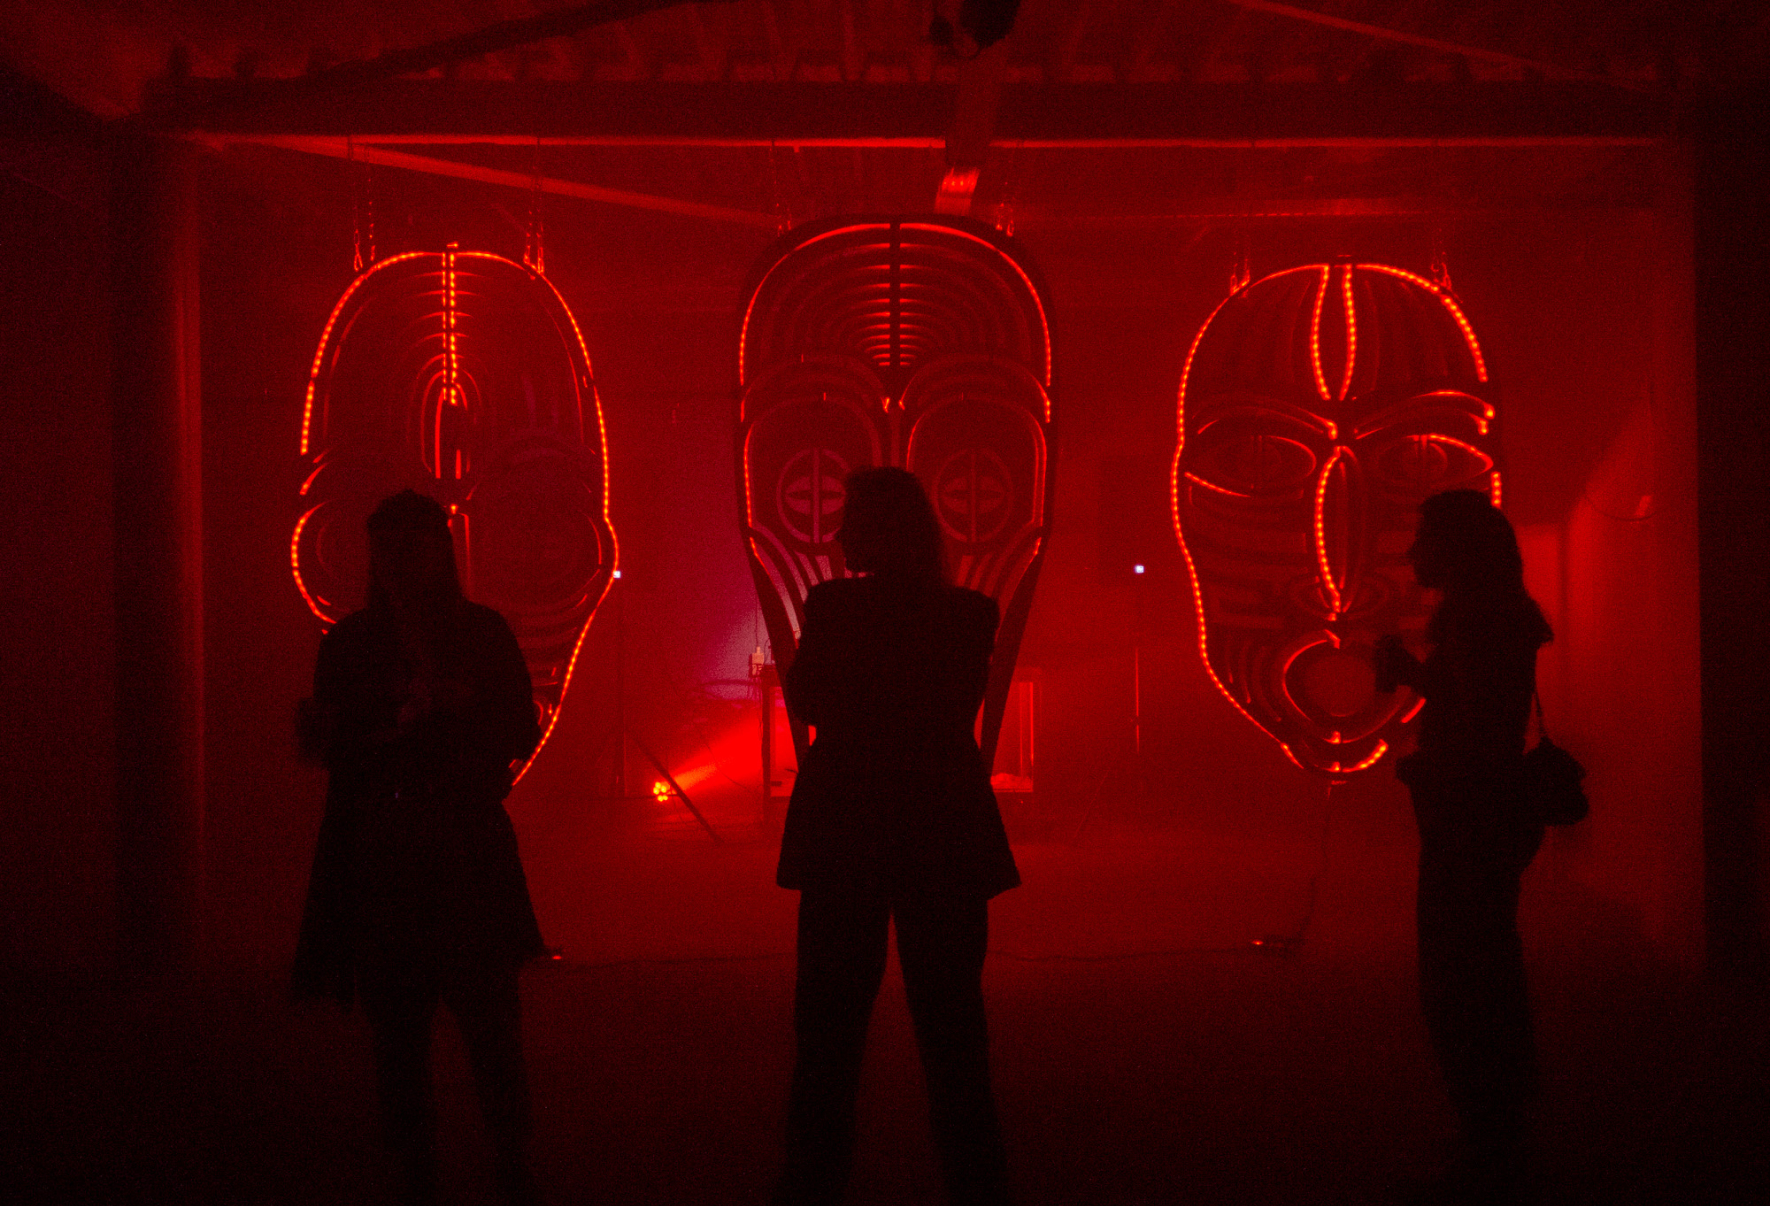 MARKITDOWN ruimte met rood licht en drie mensen in het midden